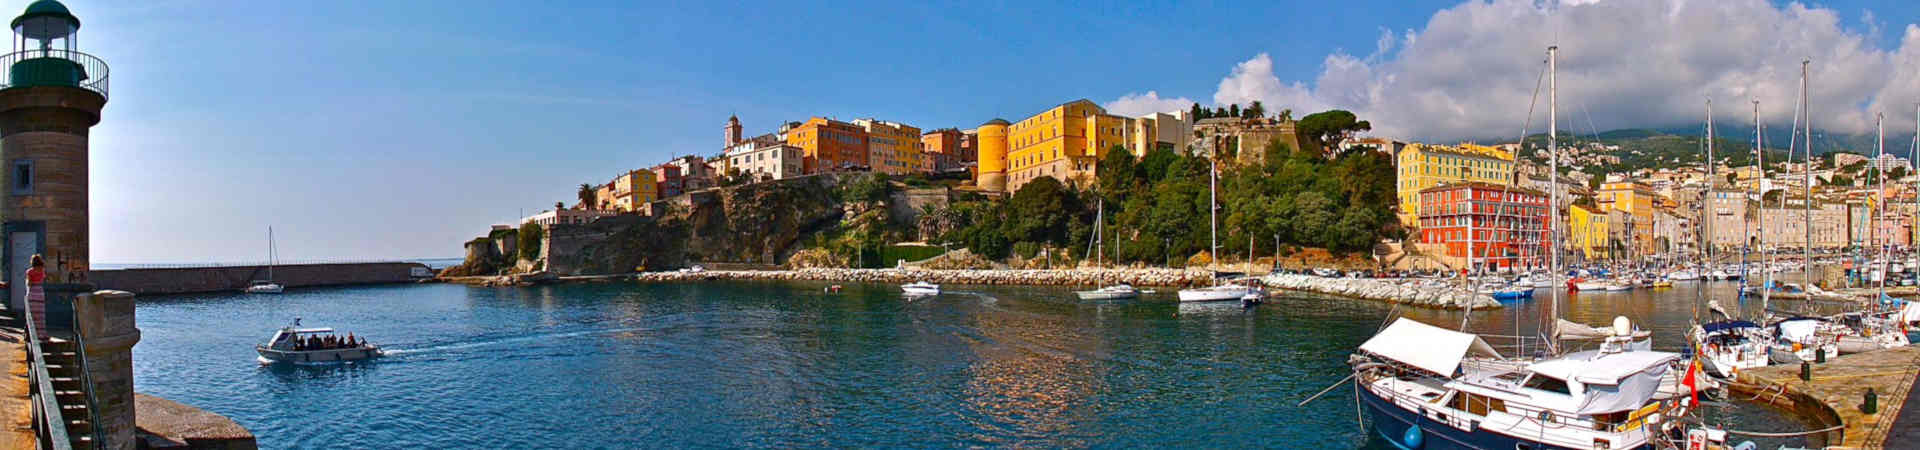 Immagine del porto di arrivo Bastia per la rotta traghetto Savona - Bastia